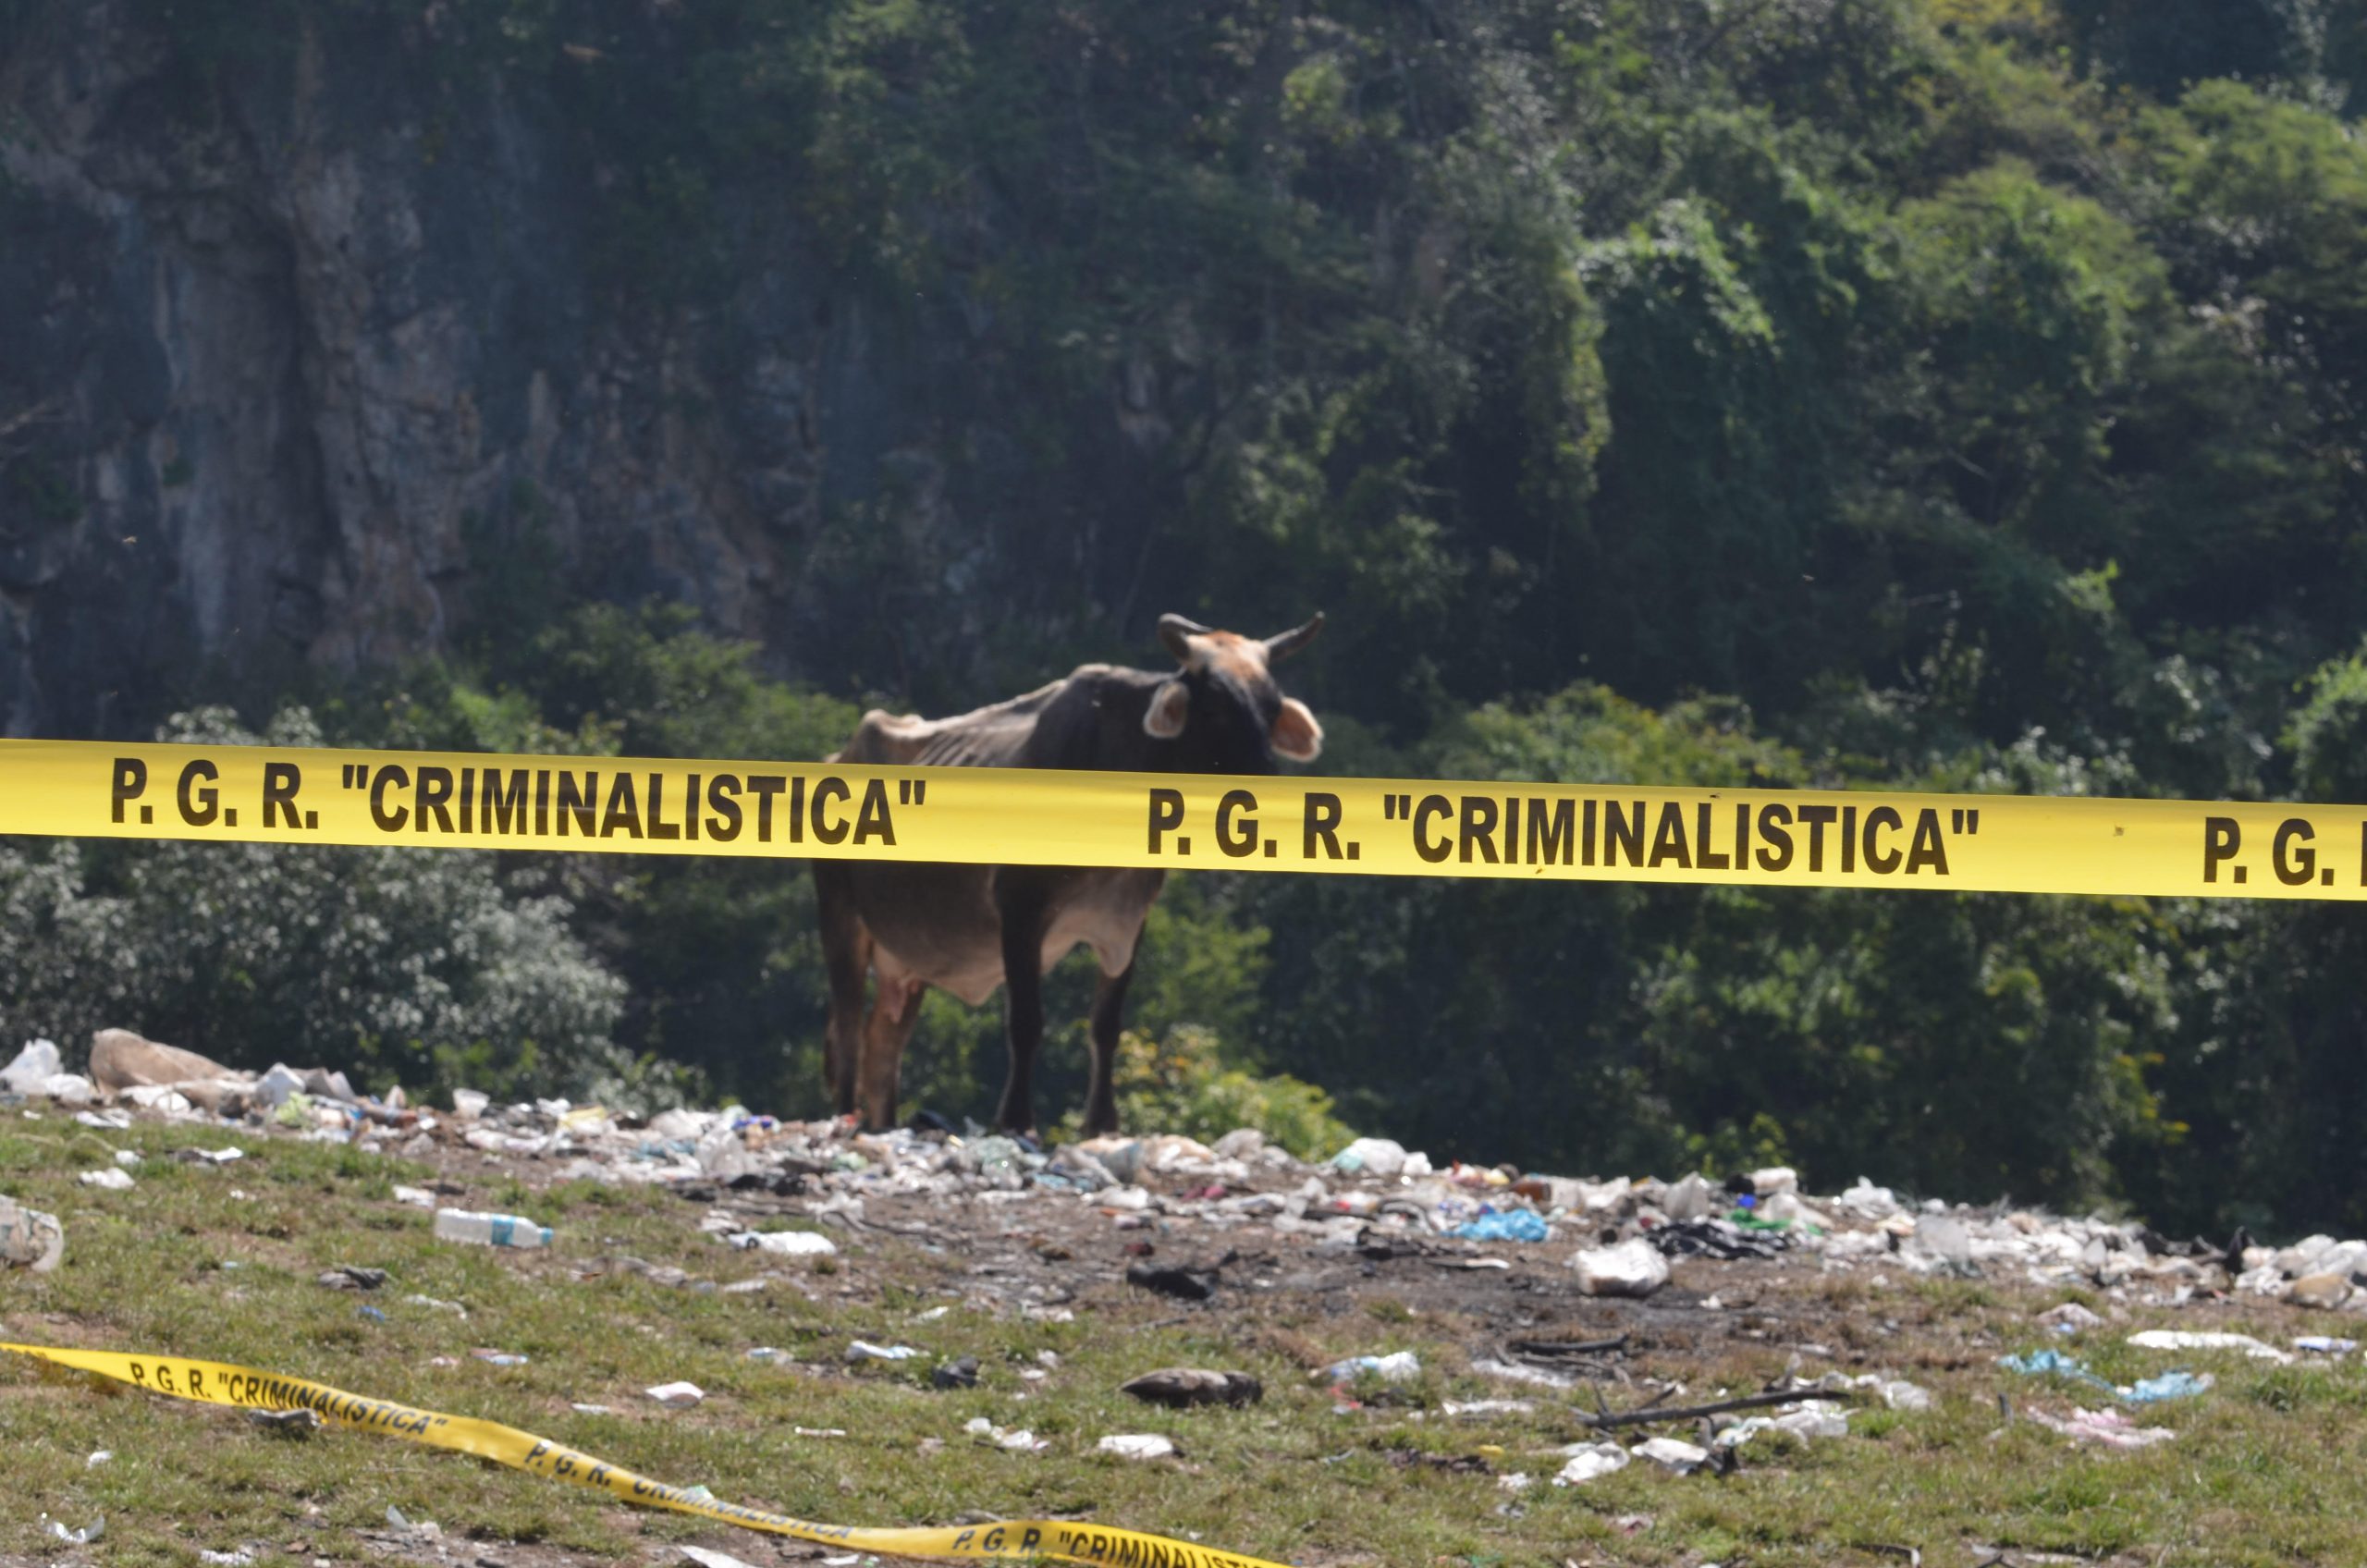 Imagen del basurero de Cocula tomada por Omar Gómez Trejo cuando lo visitó en octubre de 2014. En ese tiempo, el gobierno de Peña Nieto quiso convertirlo en escenario del crimen de los estudiantes.